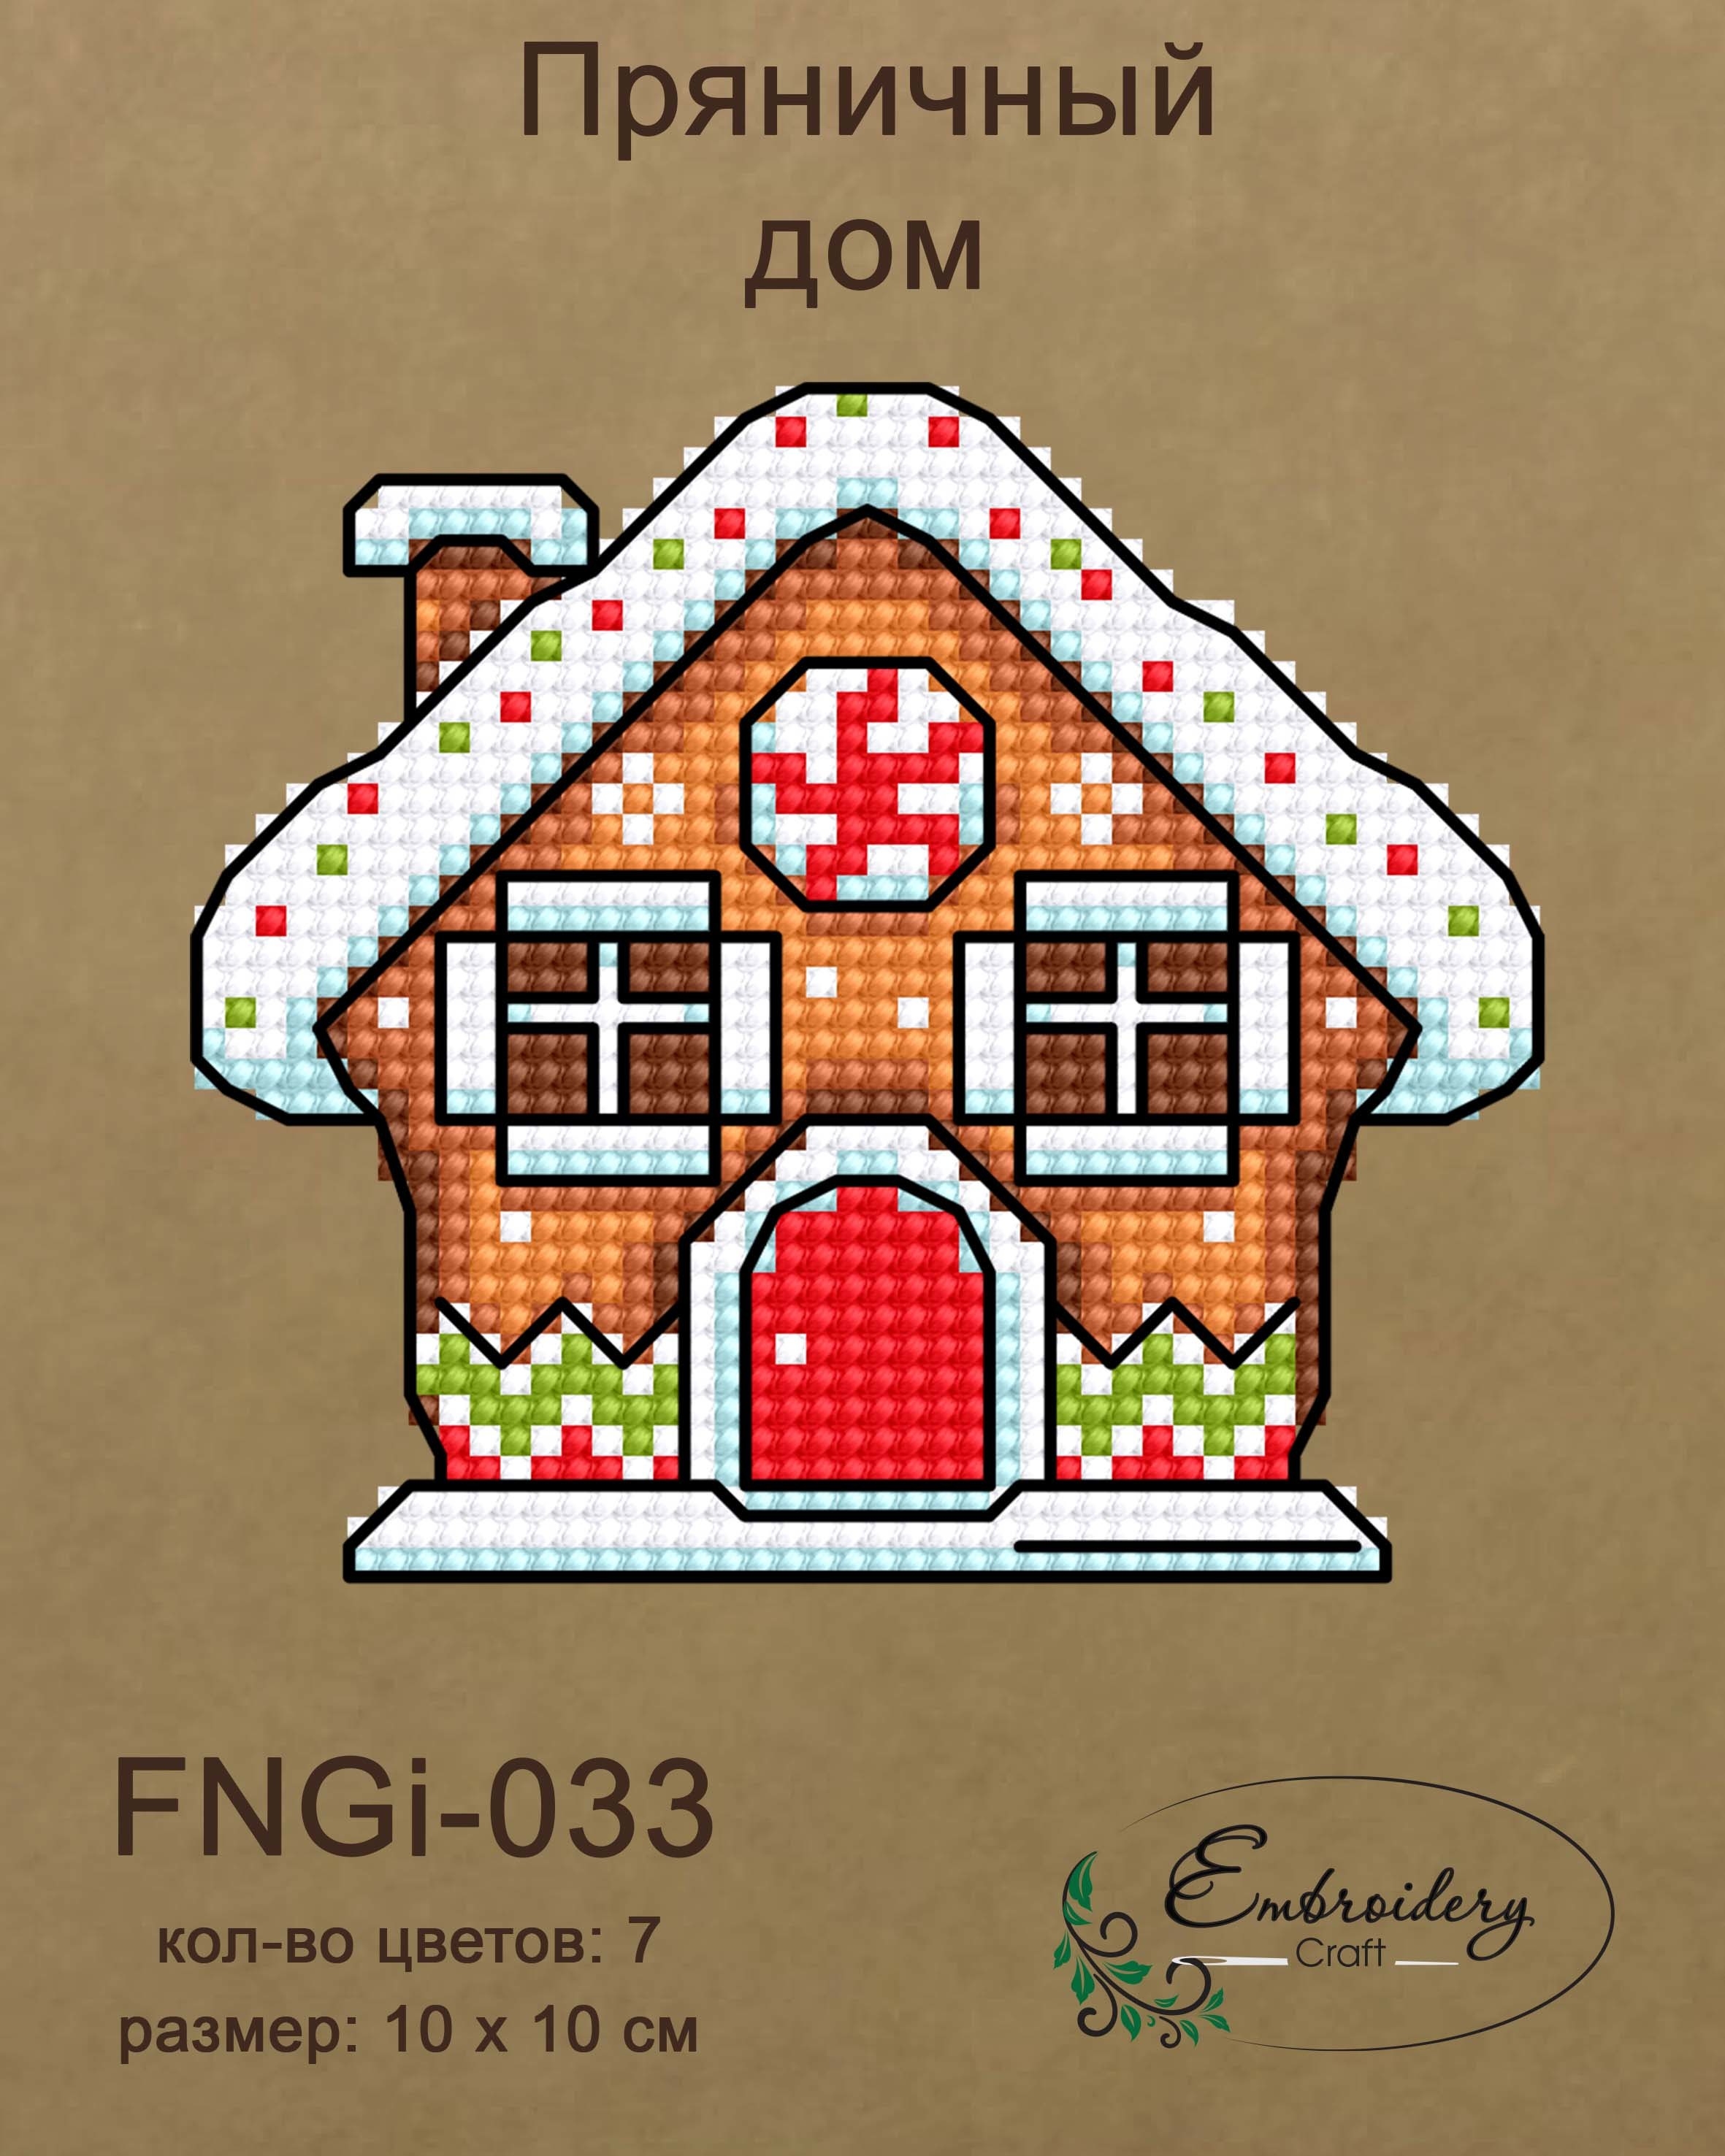 FNNGi-033 Пряничный дом